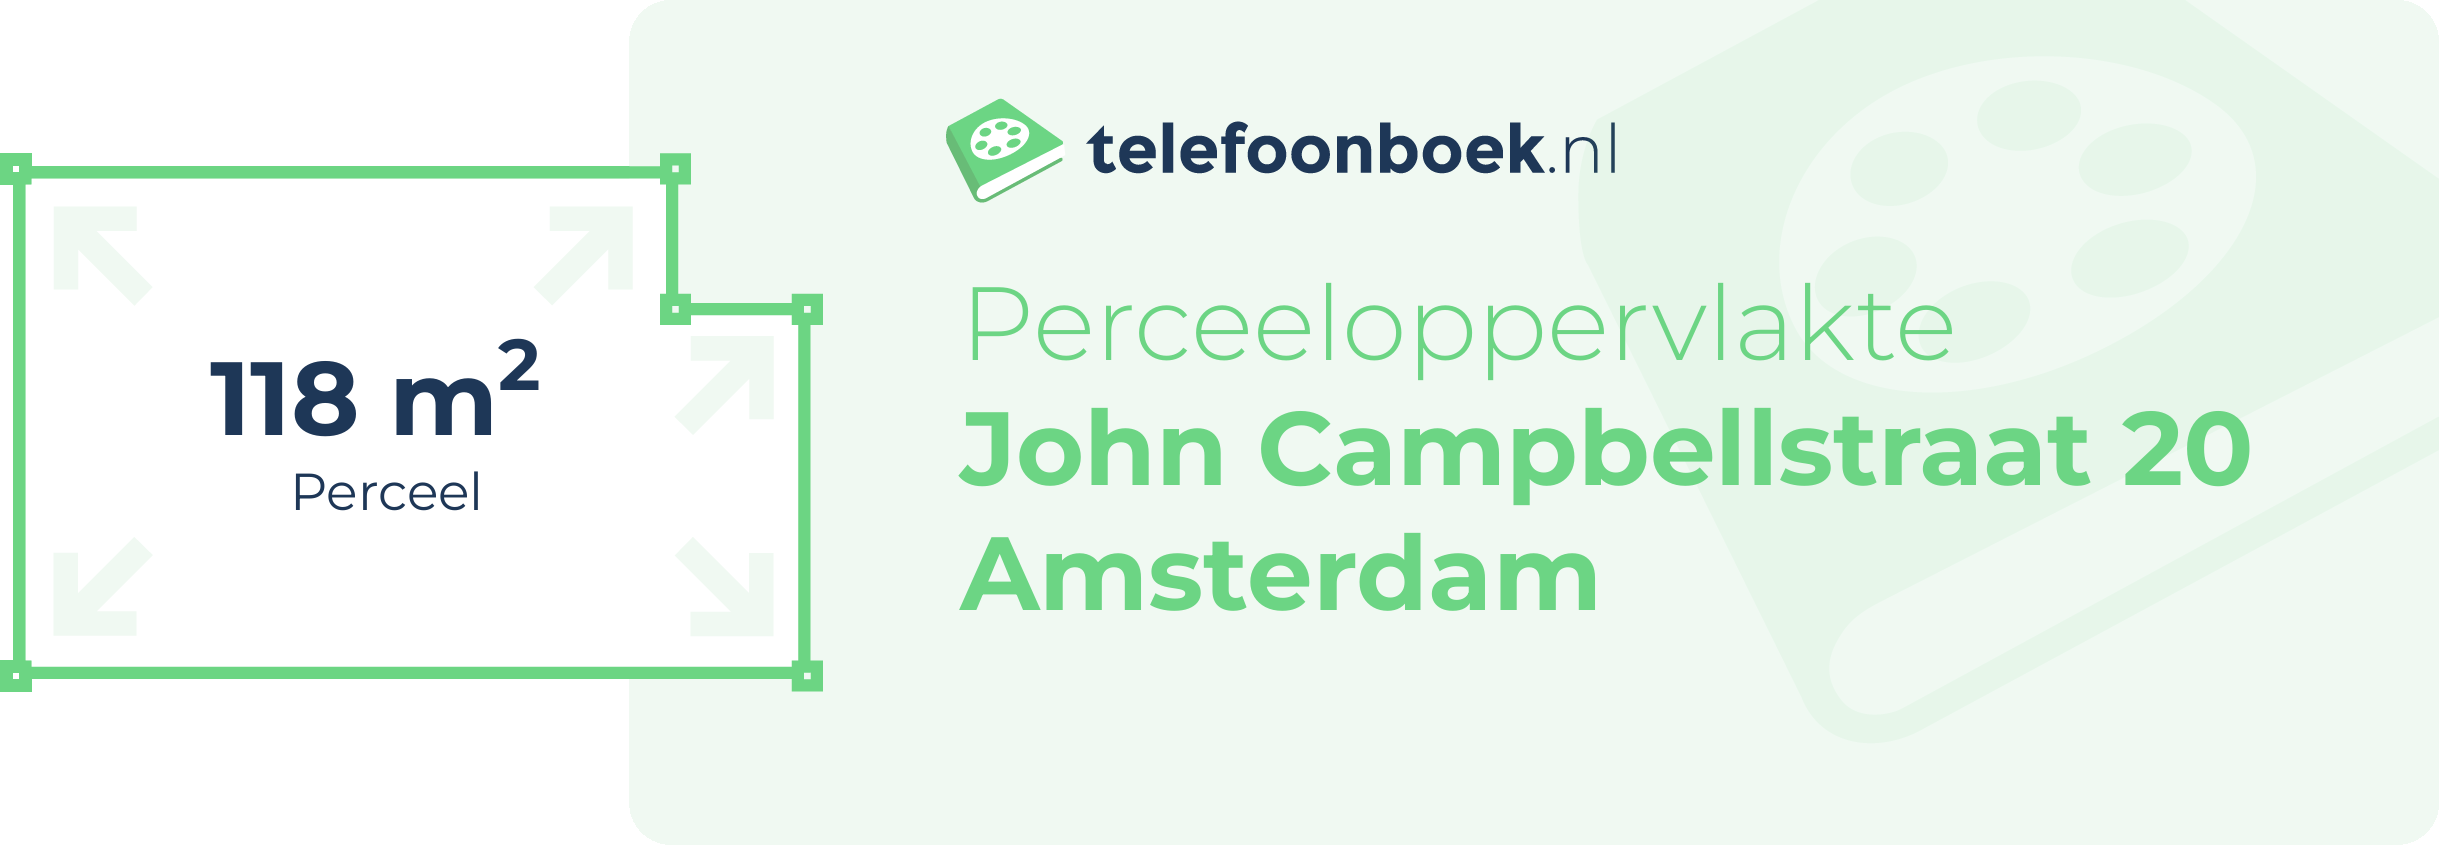 Perceeloppervlakte John Campbellstraat 20 Amsterdam